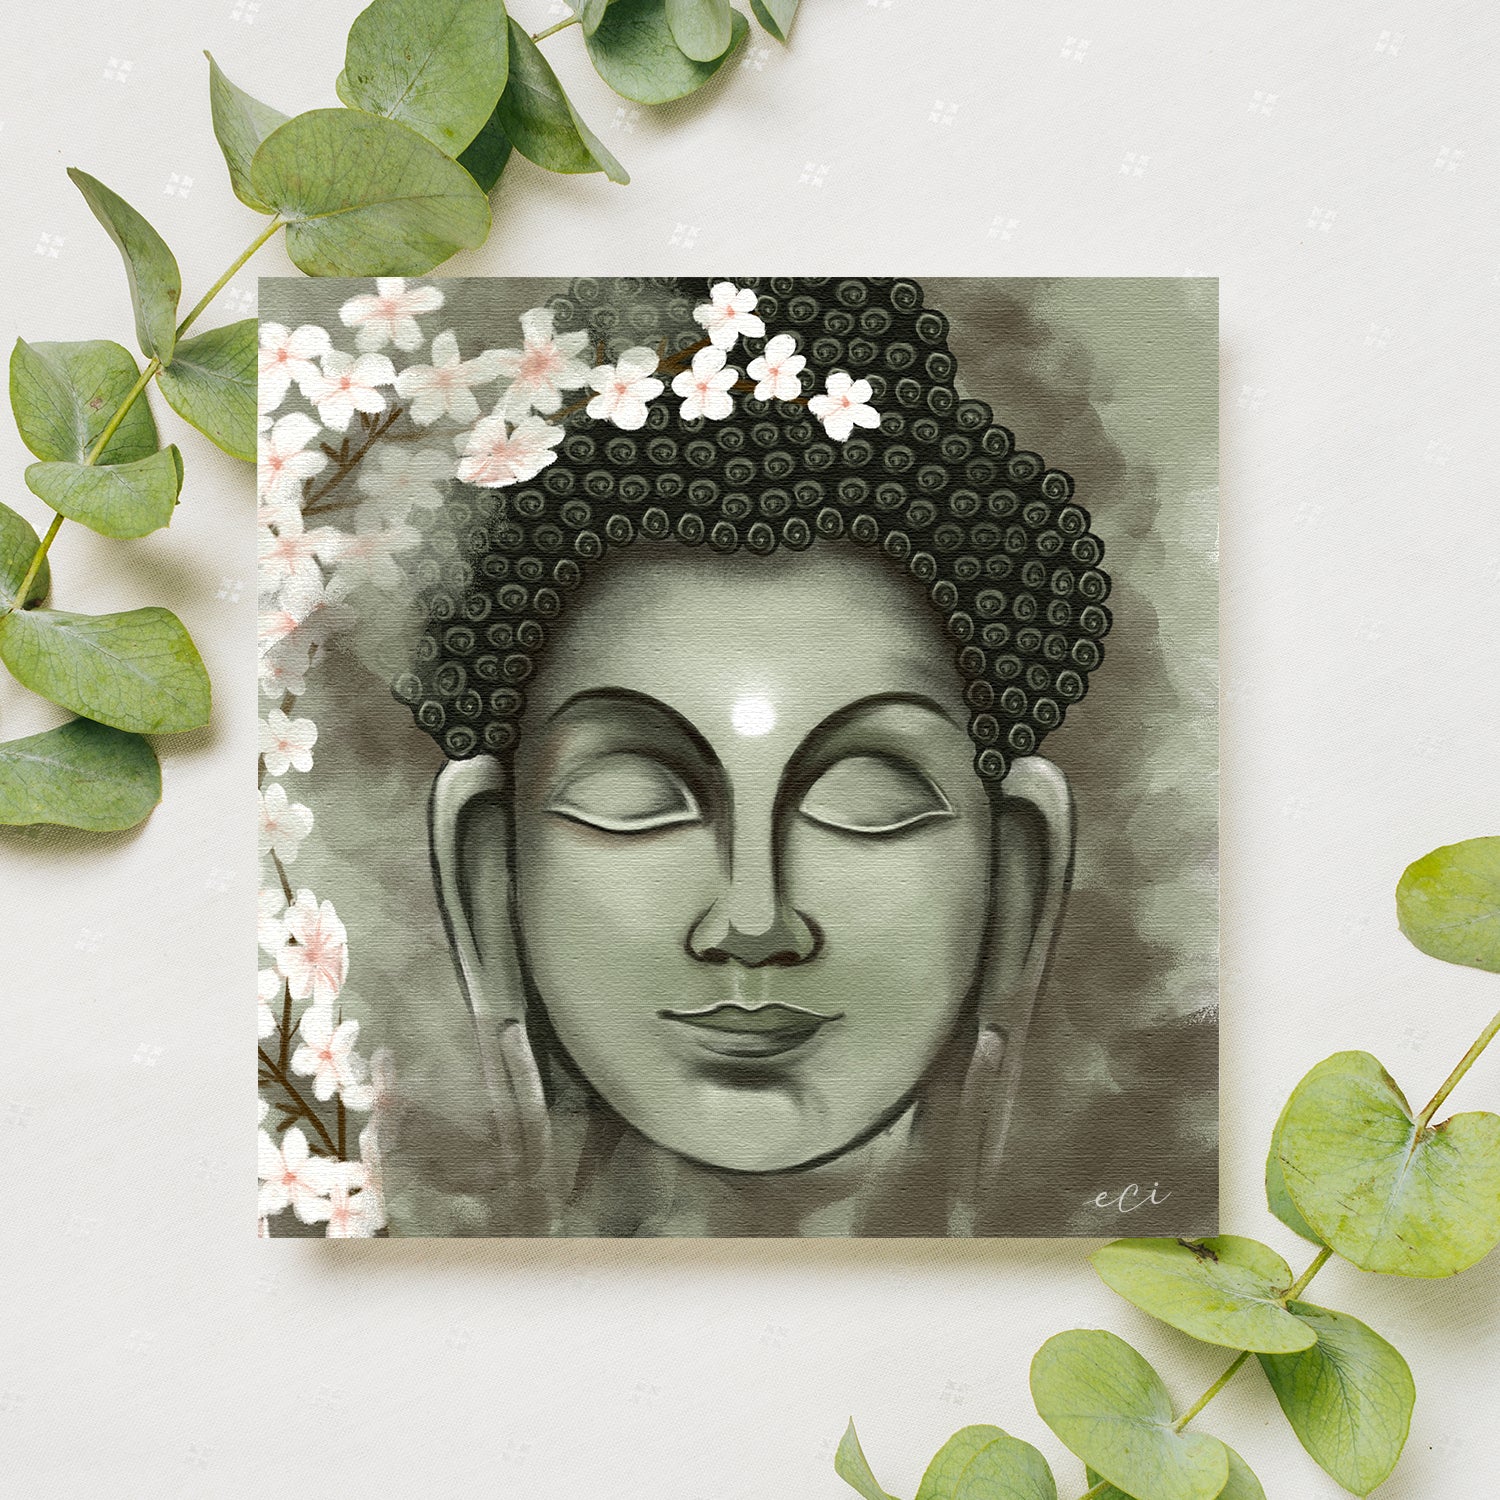 Meditating Lord Buddha Green Original Design Canvas Printed Wall Painting 1